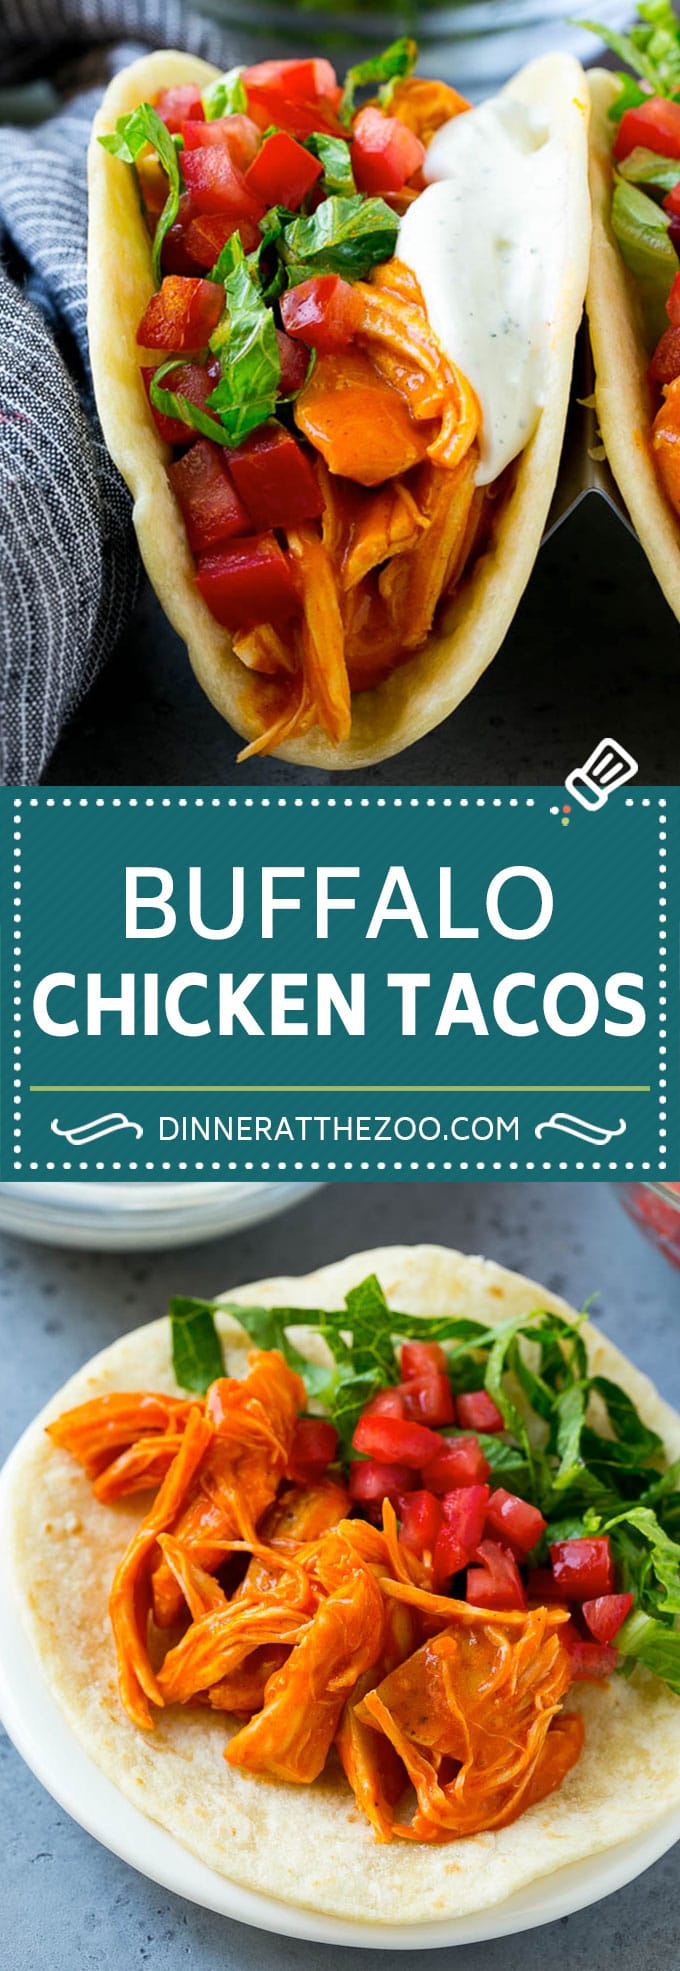 Buffalo Chicken Tacos | Chicken Taco Recipe | Spicy Chicken Tacos #tacos #tacotuesday #buffalochicken #chicken #ranch #dinner #dinneratthezoo